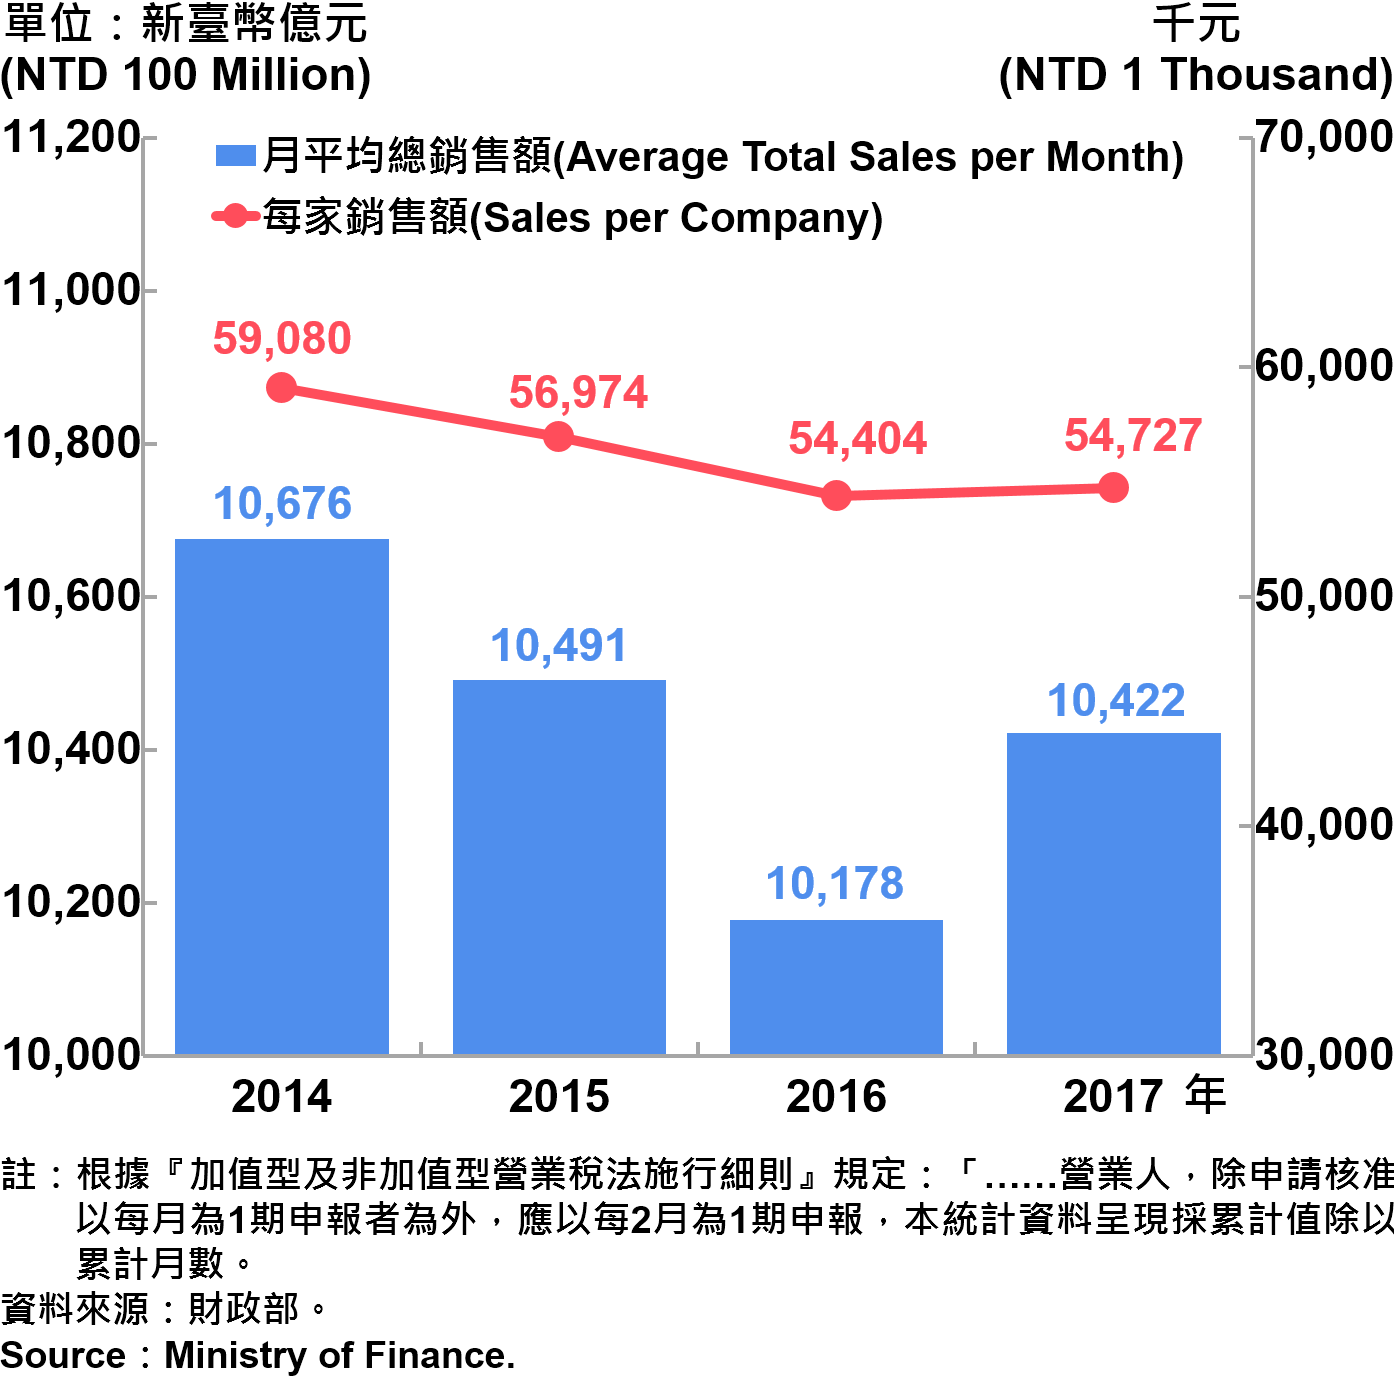 圖9、臺北市公司行號營業額—2017 Operating Income for Business Enterprises in Taipei City—2017